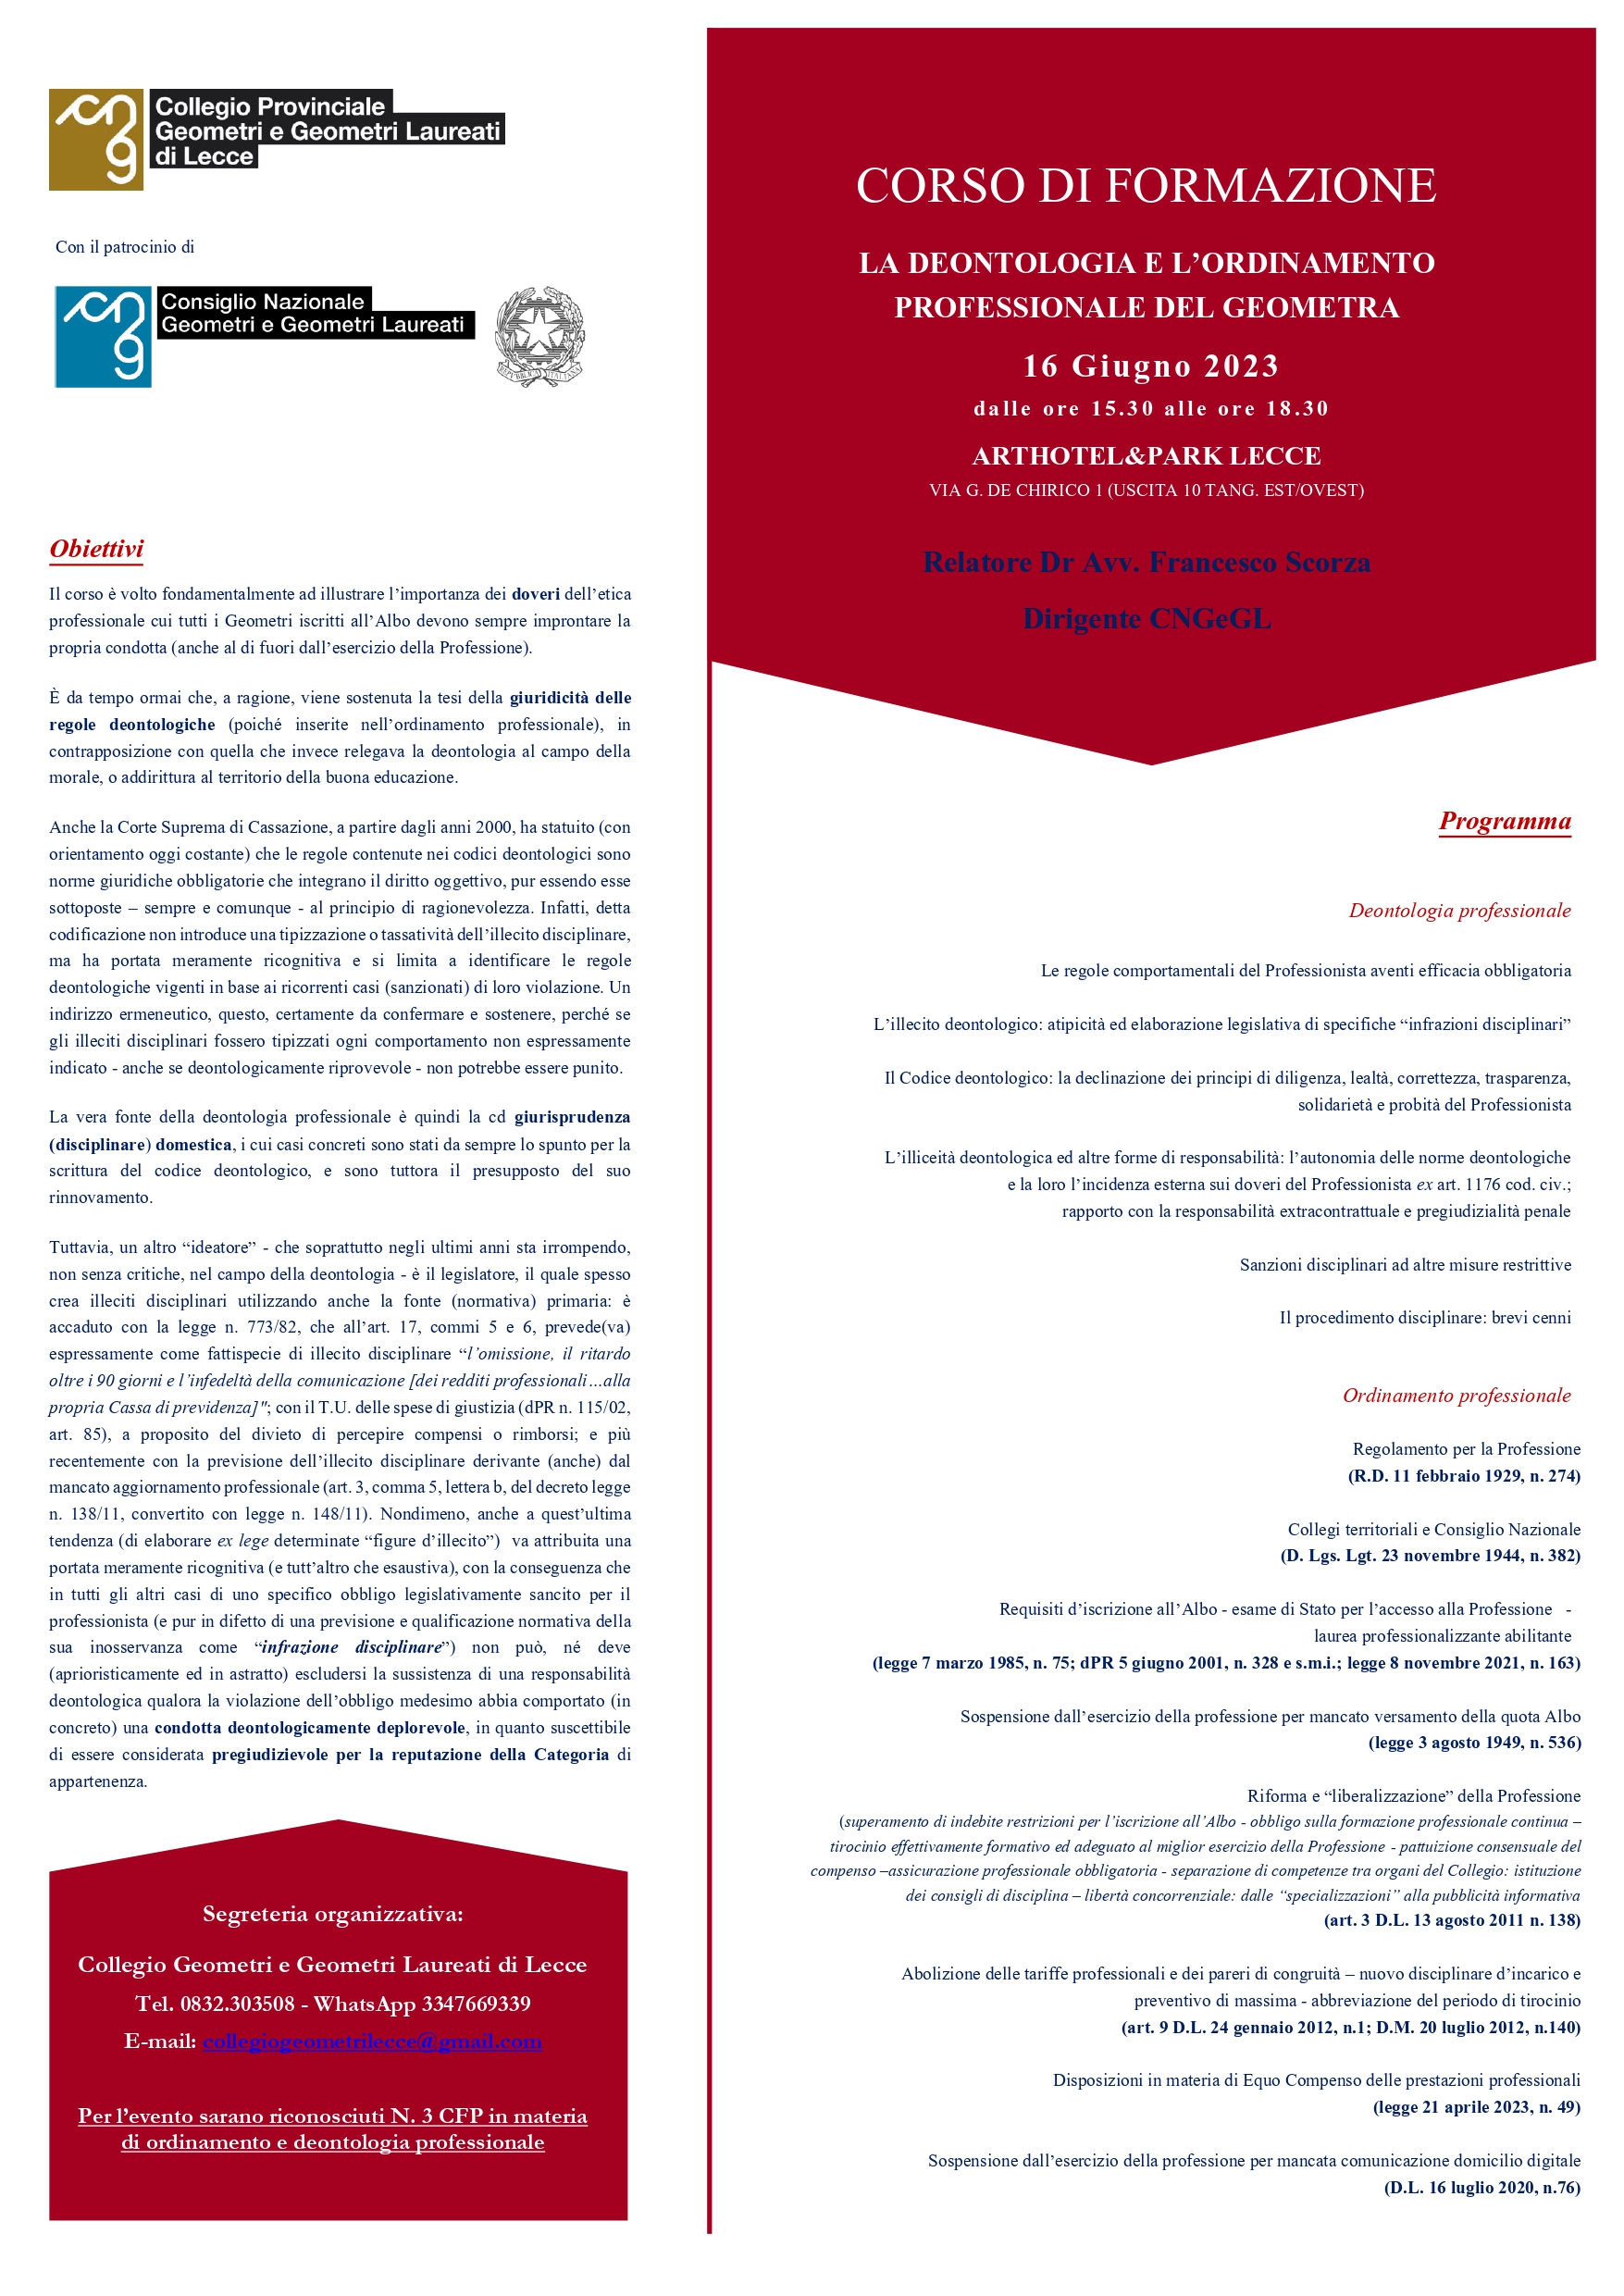 Corso di formazione “LA DEONTOLOGIA E L’ORDINAMENTO PROFESSIONALE DEL GEOMETRA” – Lecce 16 giugno 2023